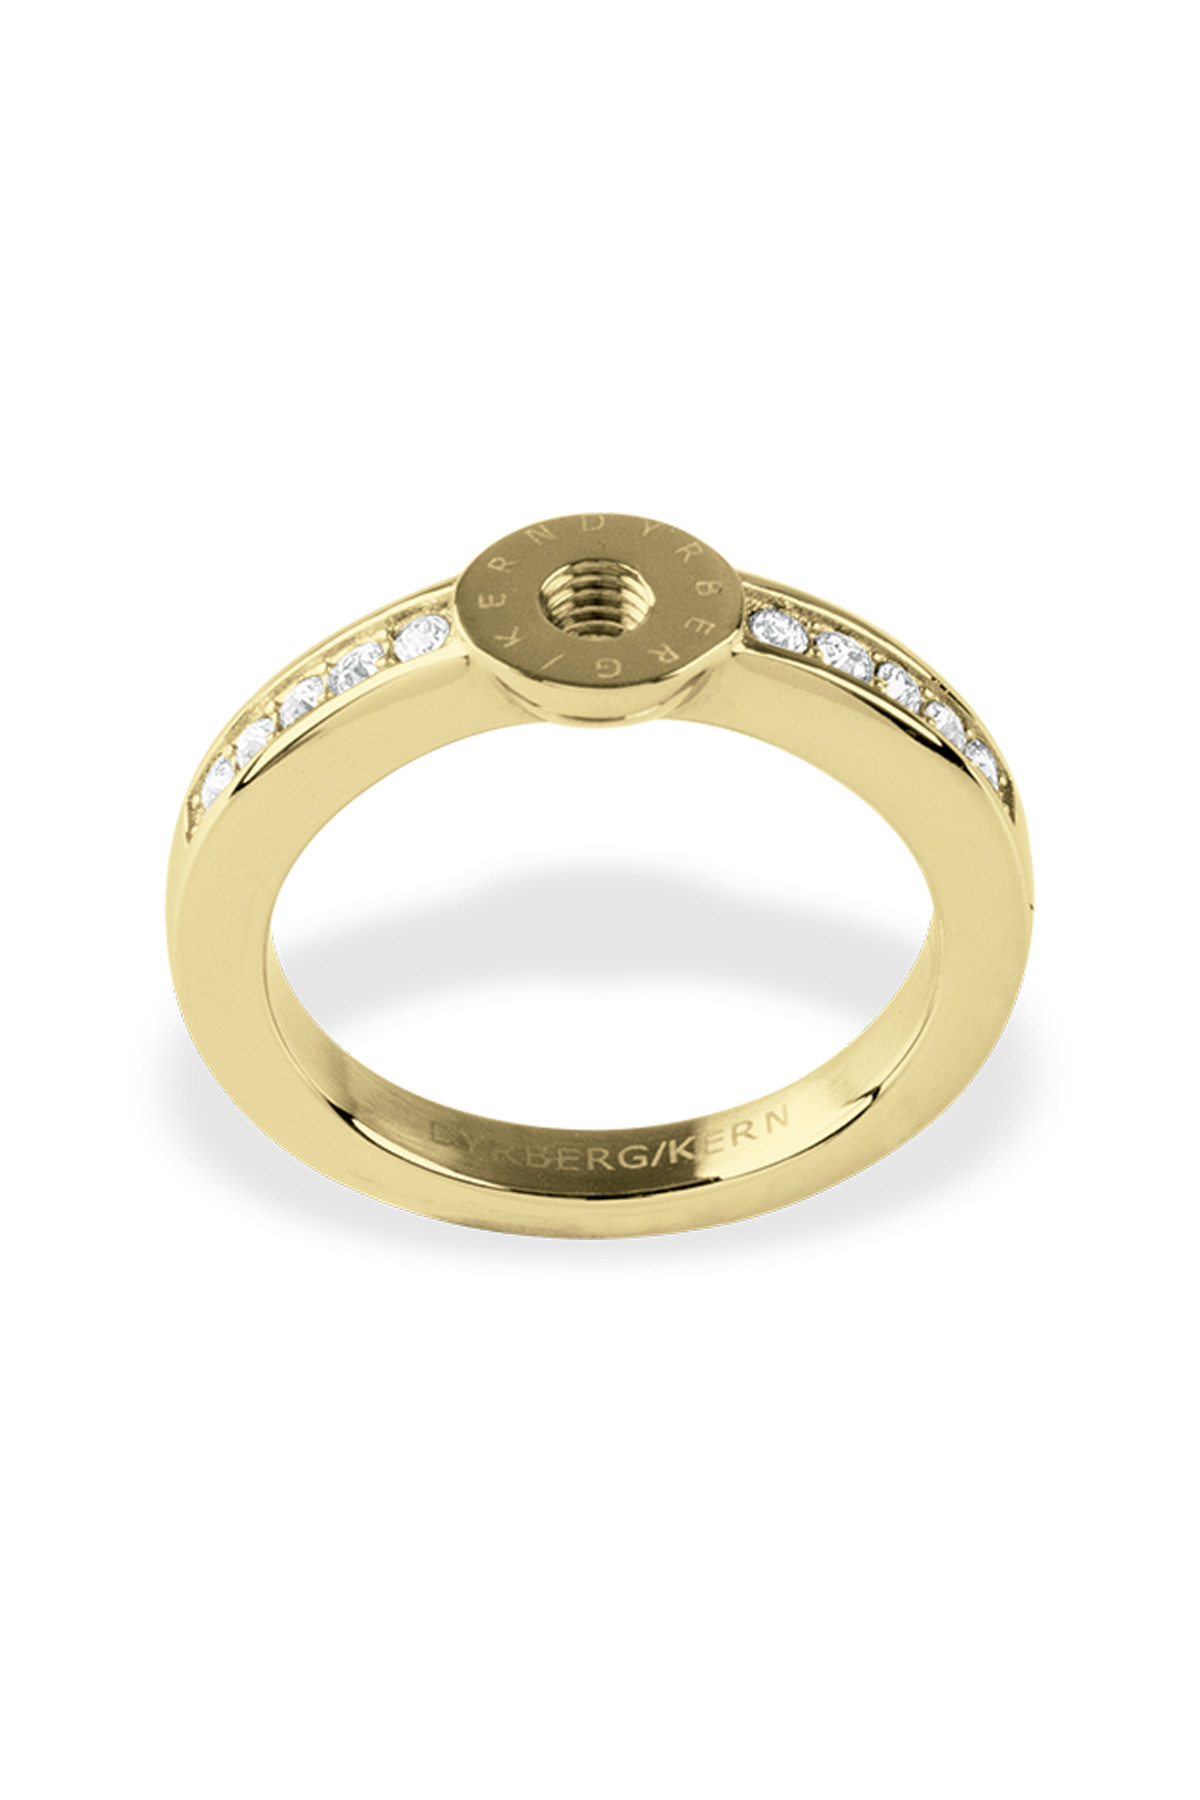 Billede af Dyrberg/Kern Ring Ring, Color: Gold/Crystal, Iiiii/, Women